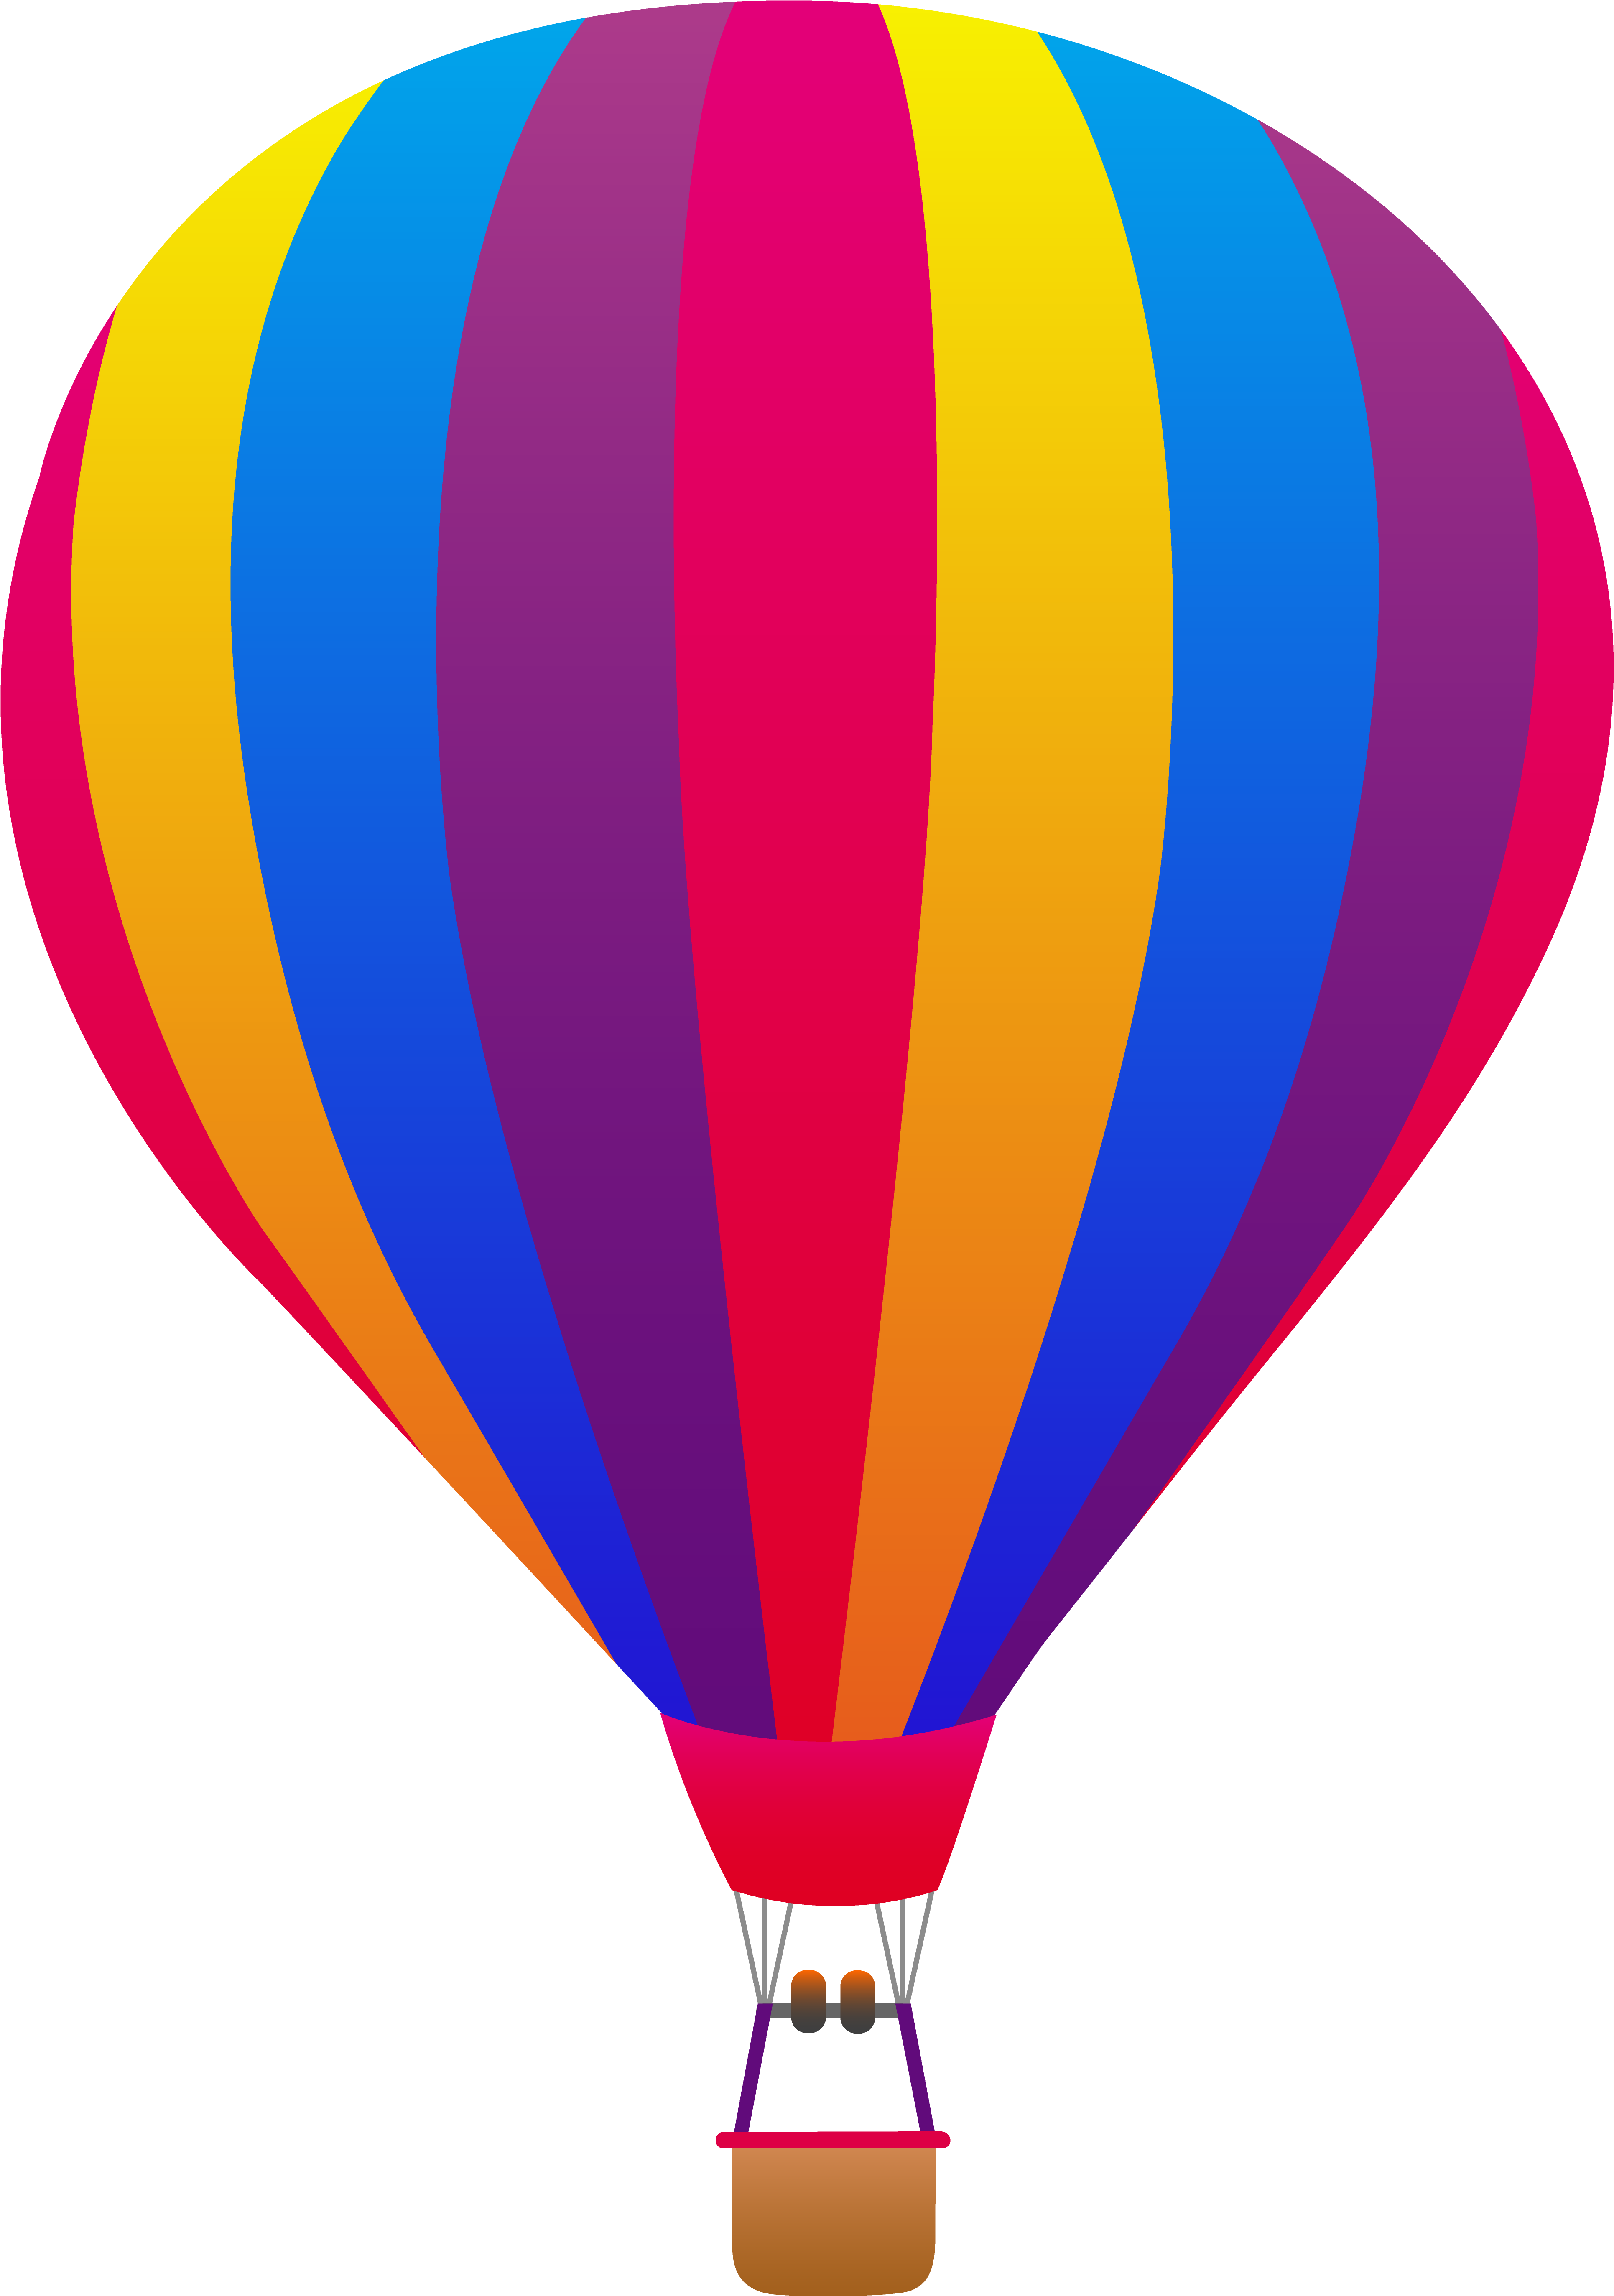 On Sale Hot Air Balloons - Hot Air Balloon Clip Art (4114x5559)